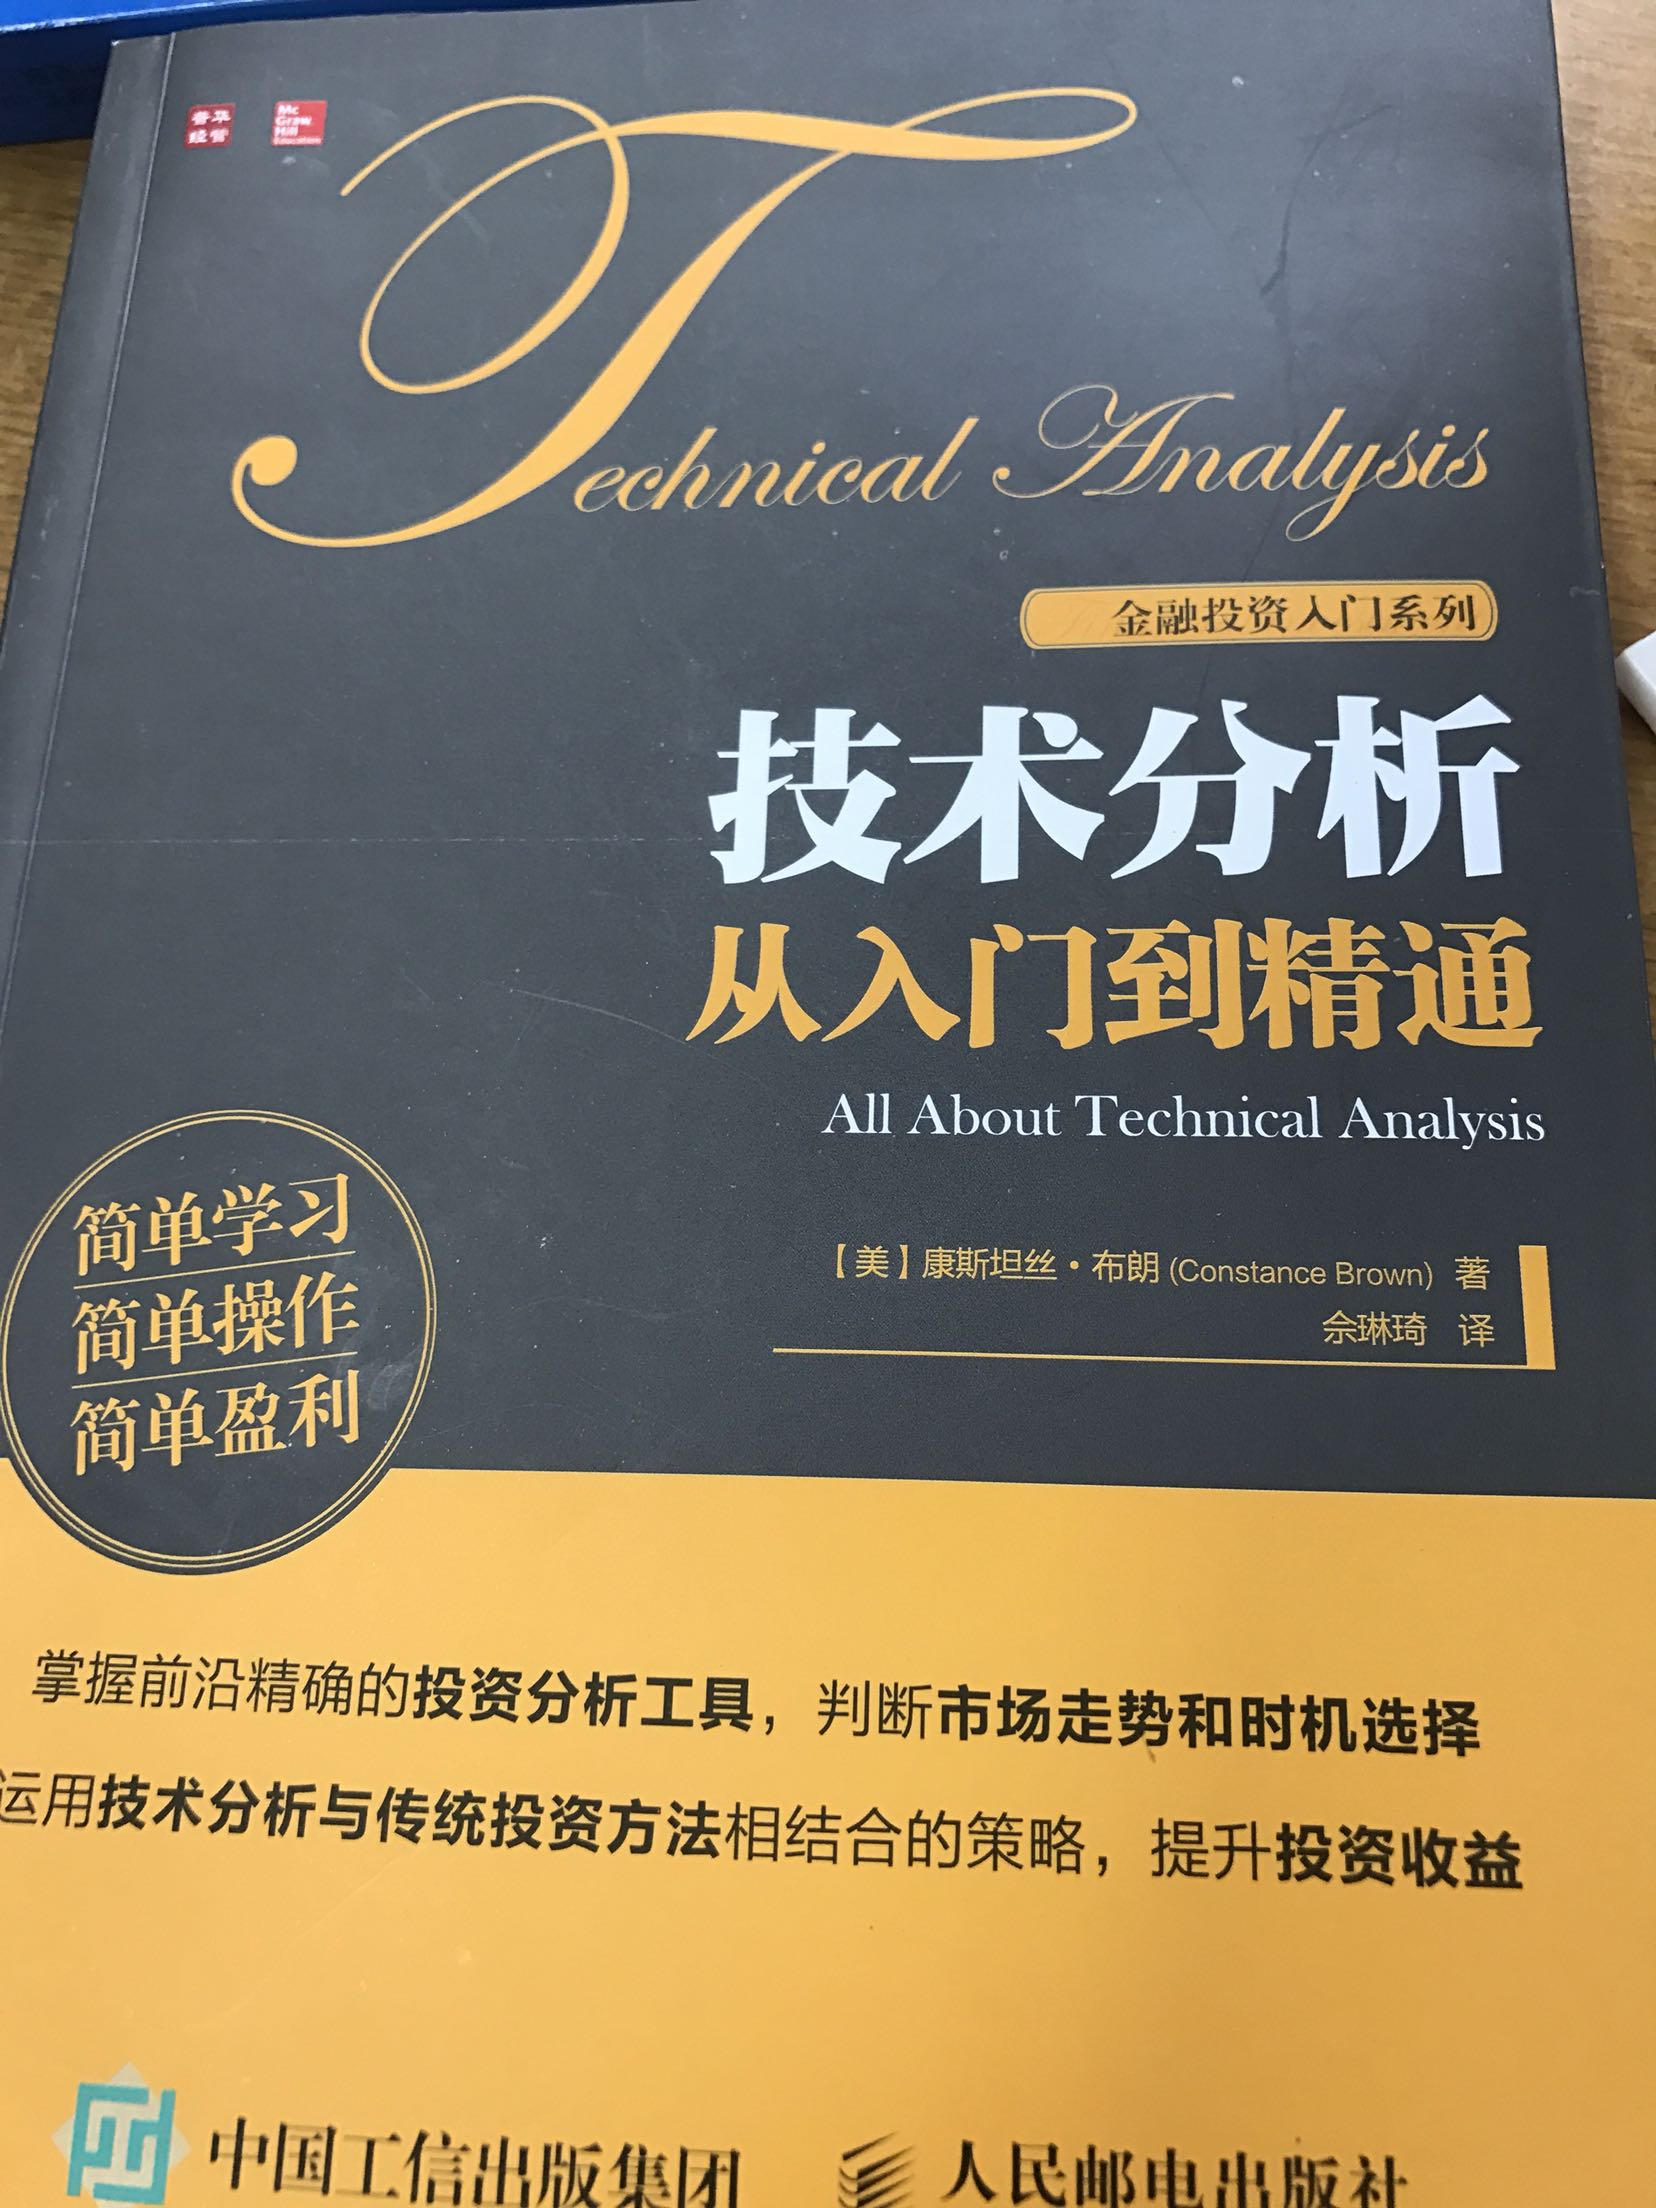 真是一本好书，适合刚入行的人，这一系列是整套完备、全面的投资宝典，专业人士可以借鉴其中国外各种投资模式